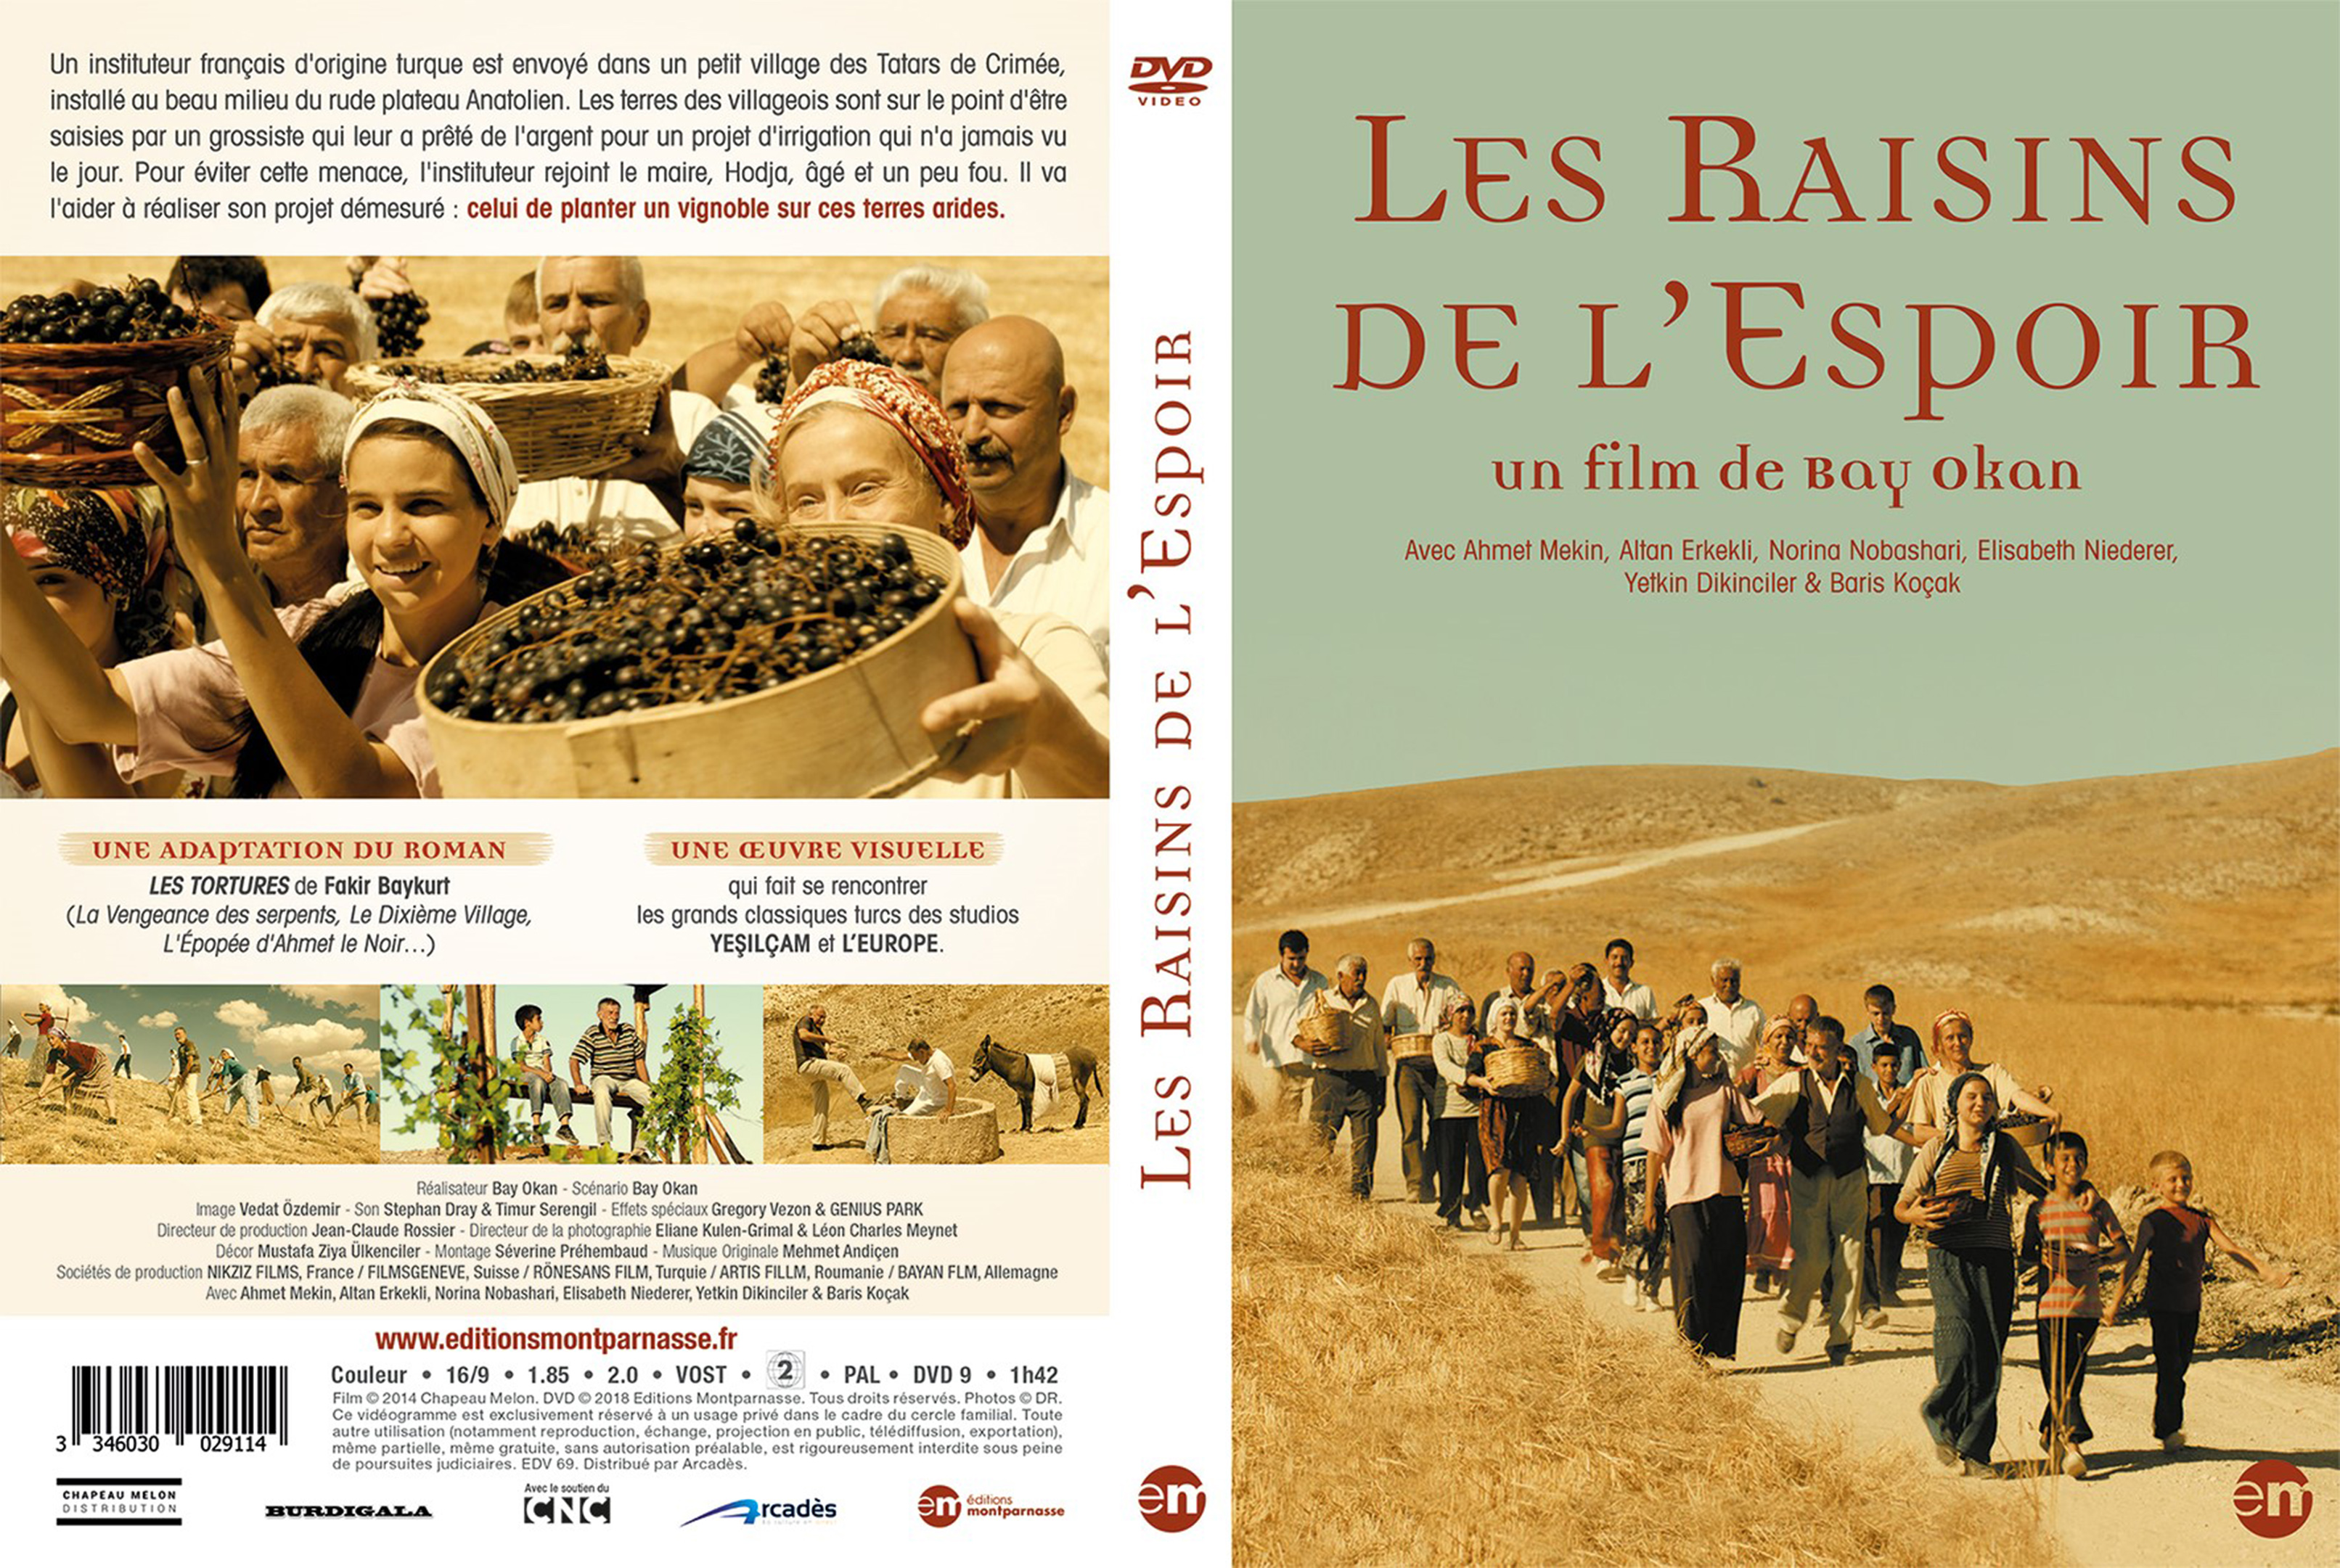 Jaquette DVD Les Raisins de l